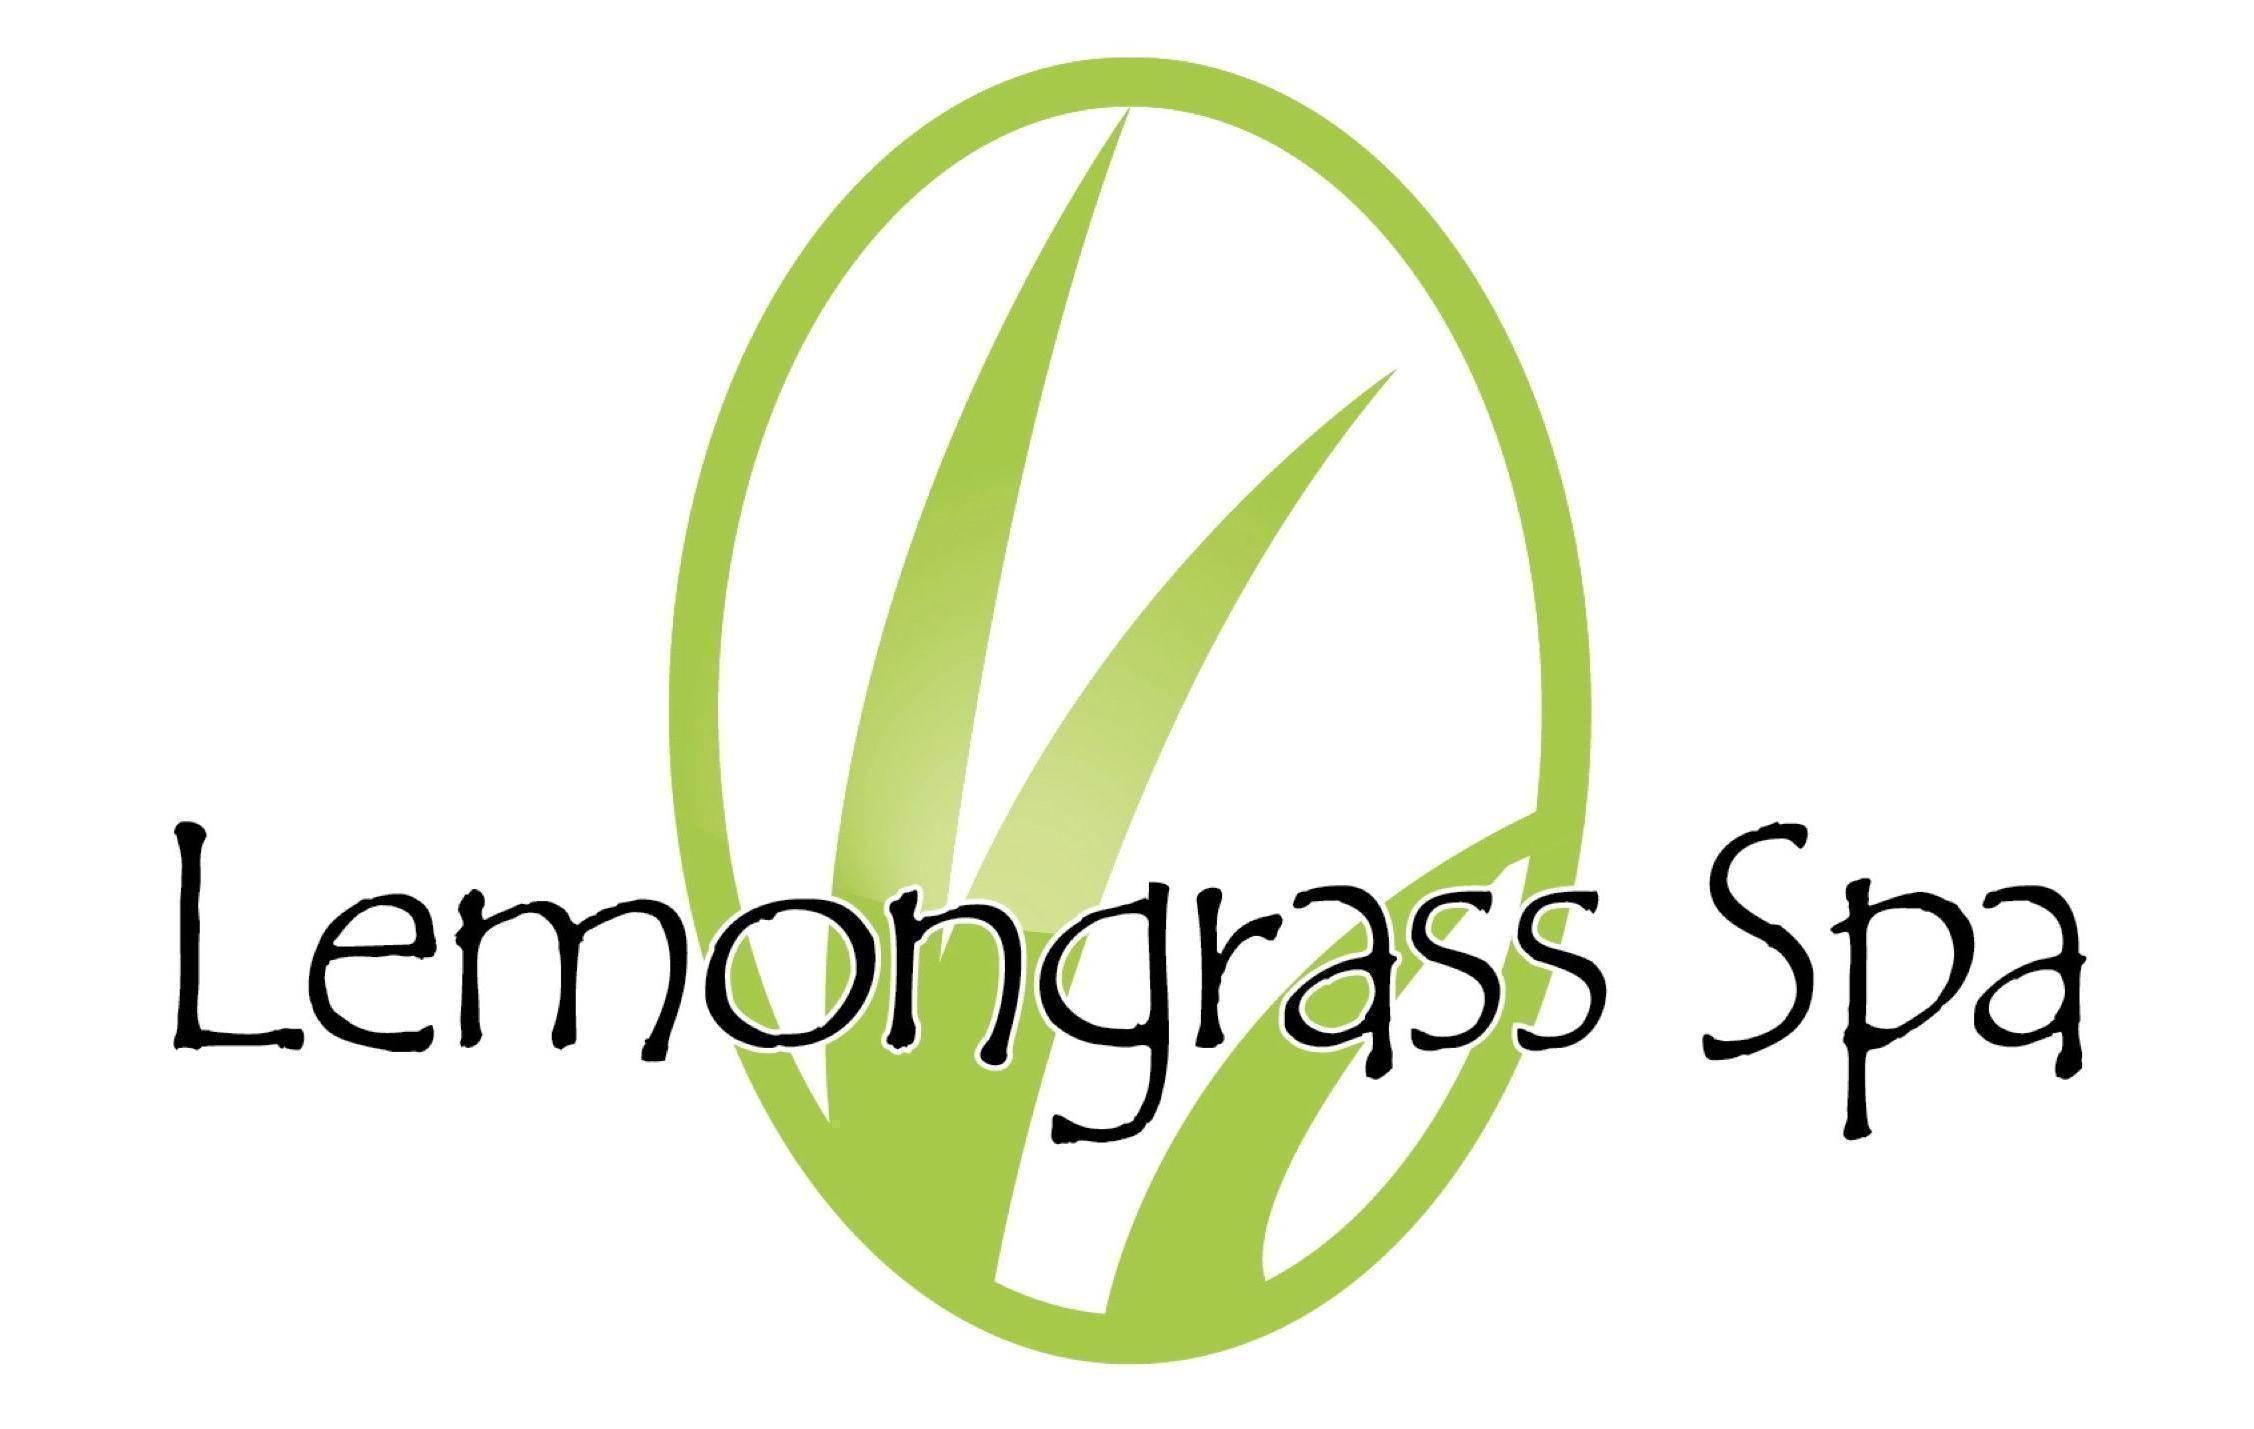 Lemongrass Logo - Lemongrass Spa Competitors, Revenue and Employees Company